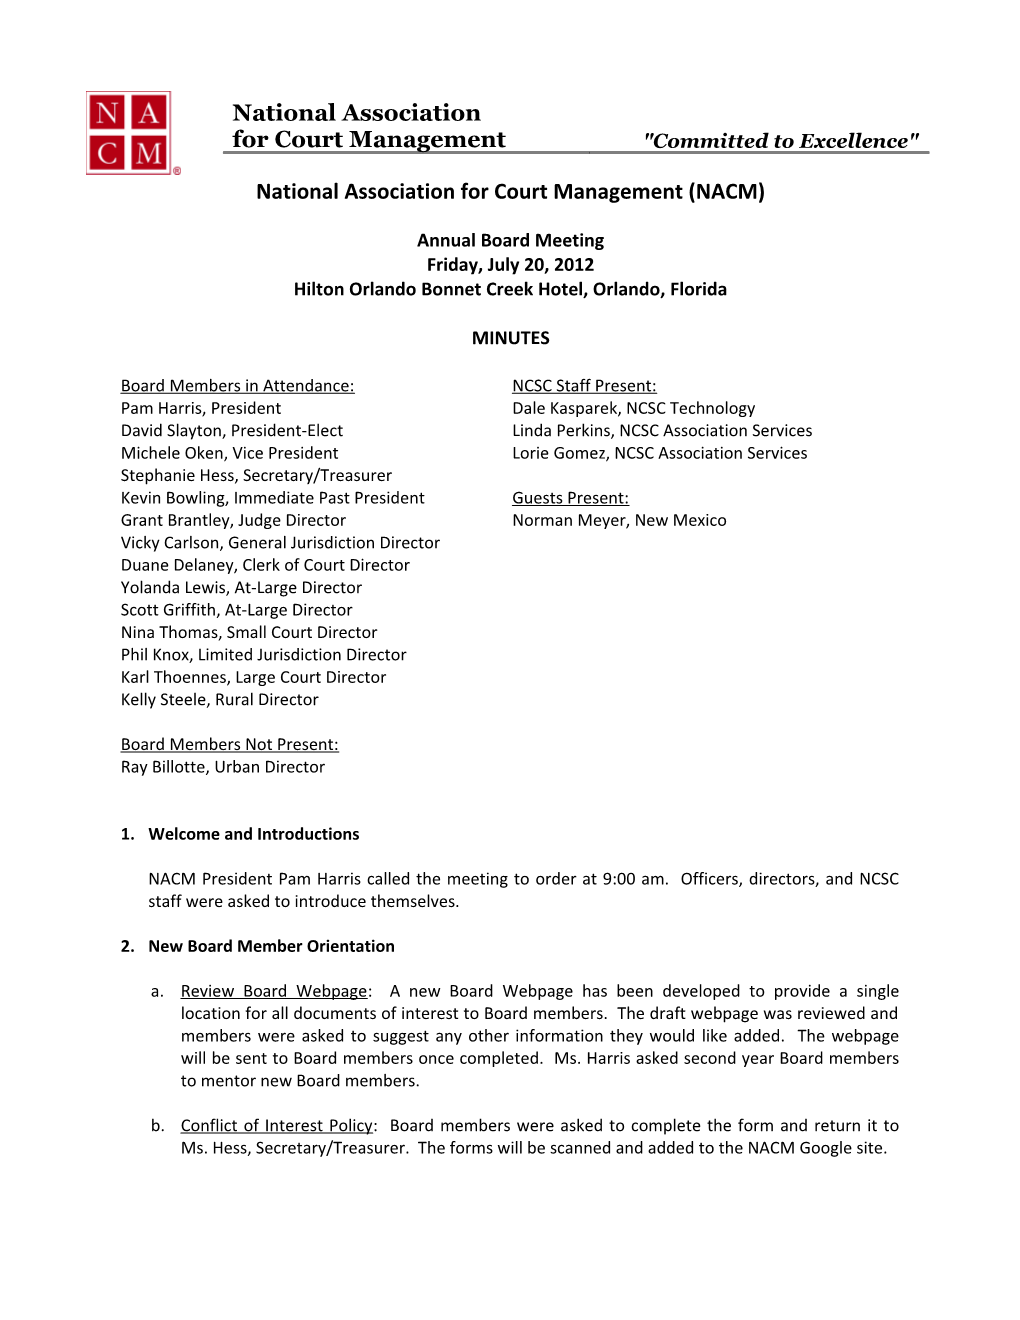 National Association for Court Management (NACM)